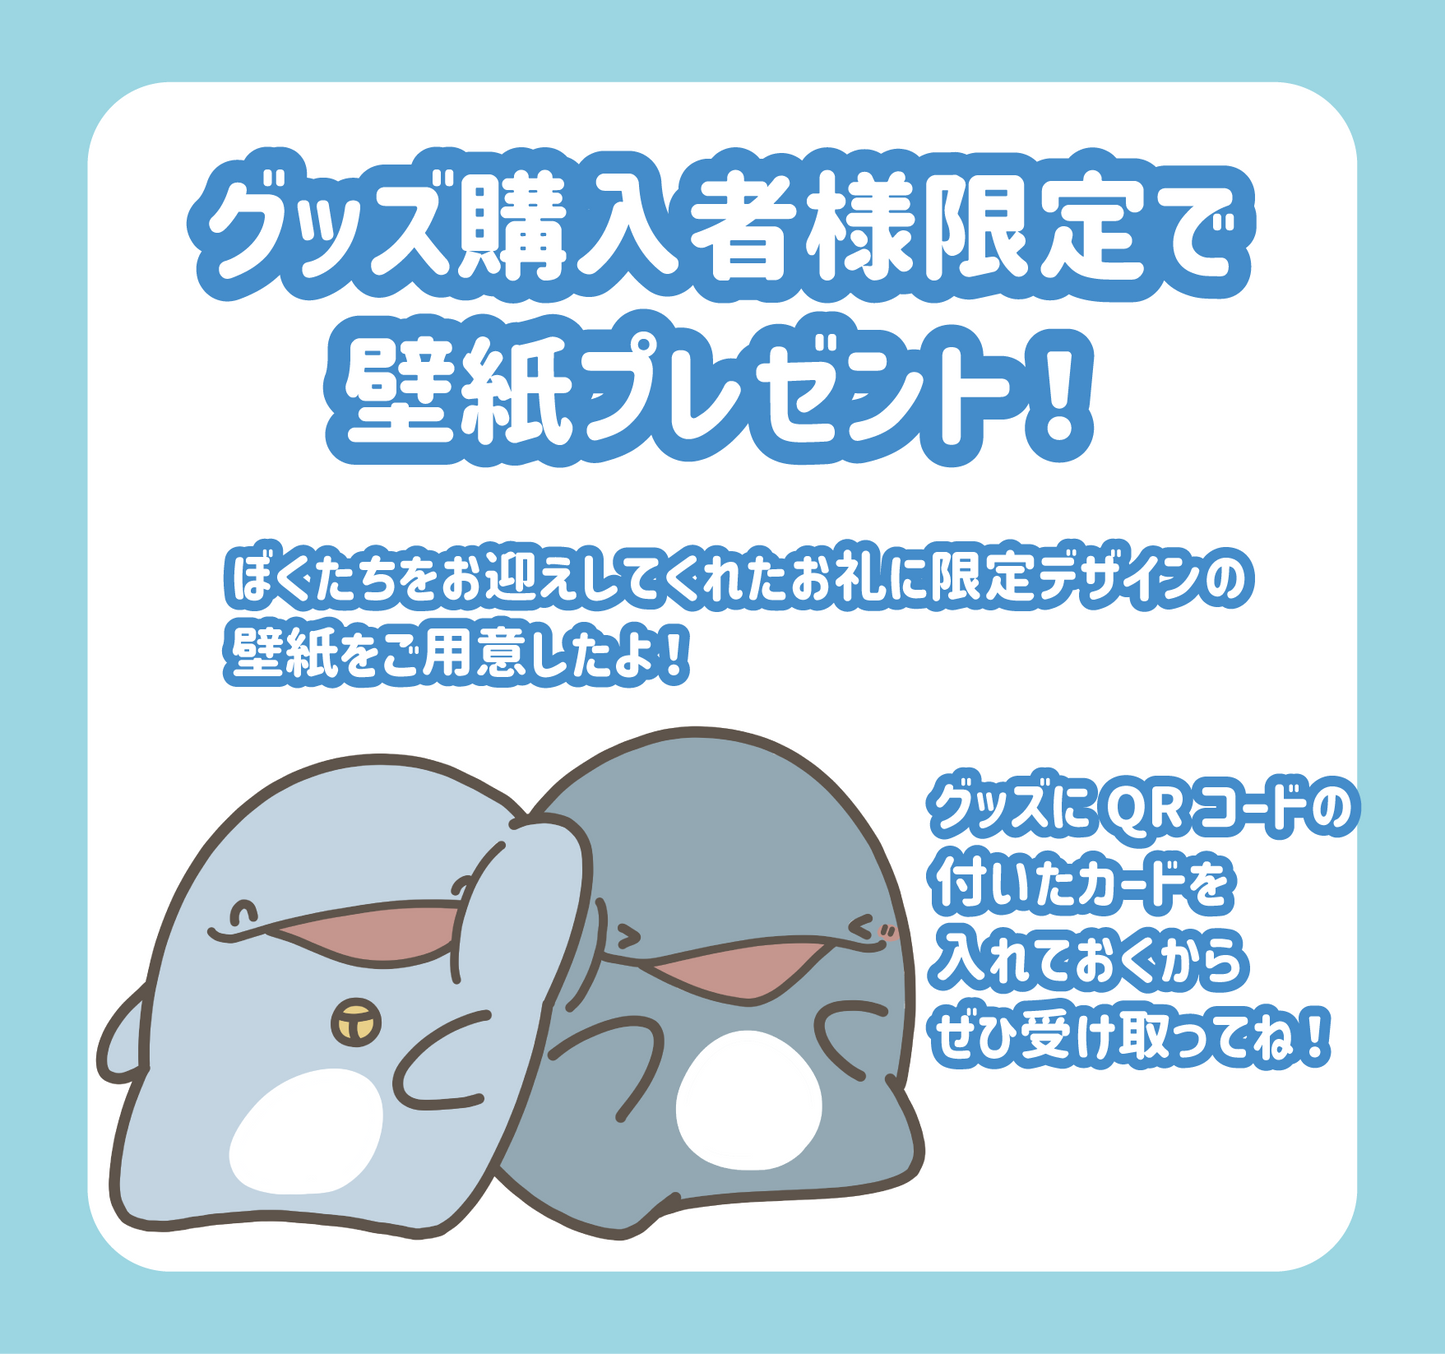 【親子海豚】OYAKOIRUKA LUCKY BAG 2024【1月中旬出貨】